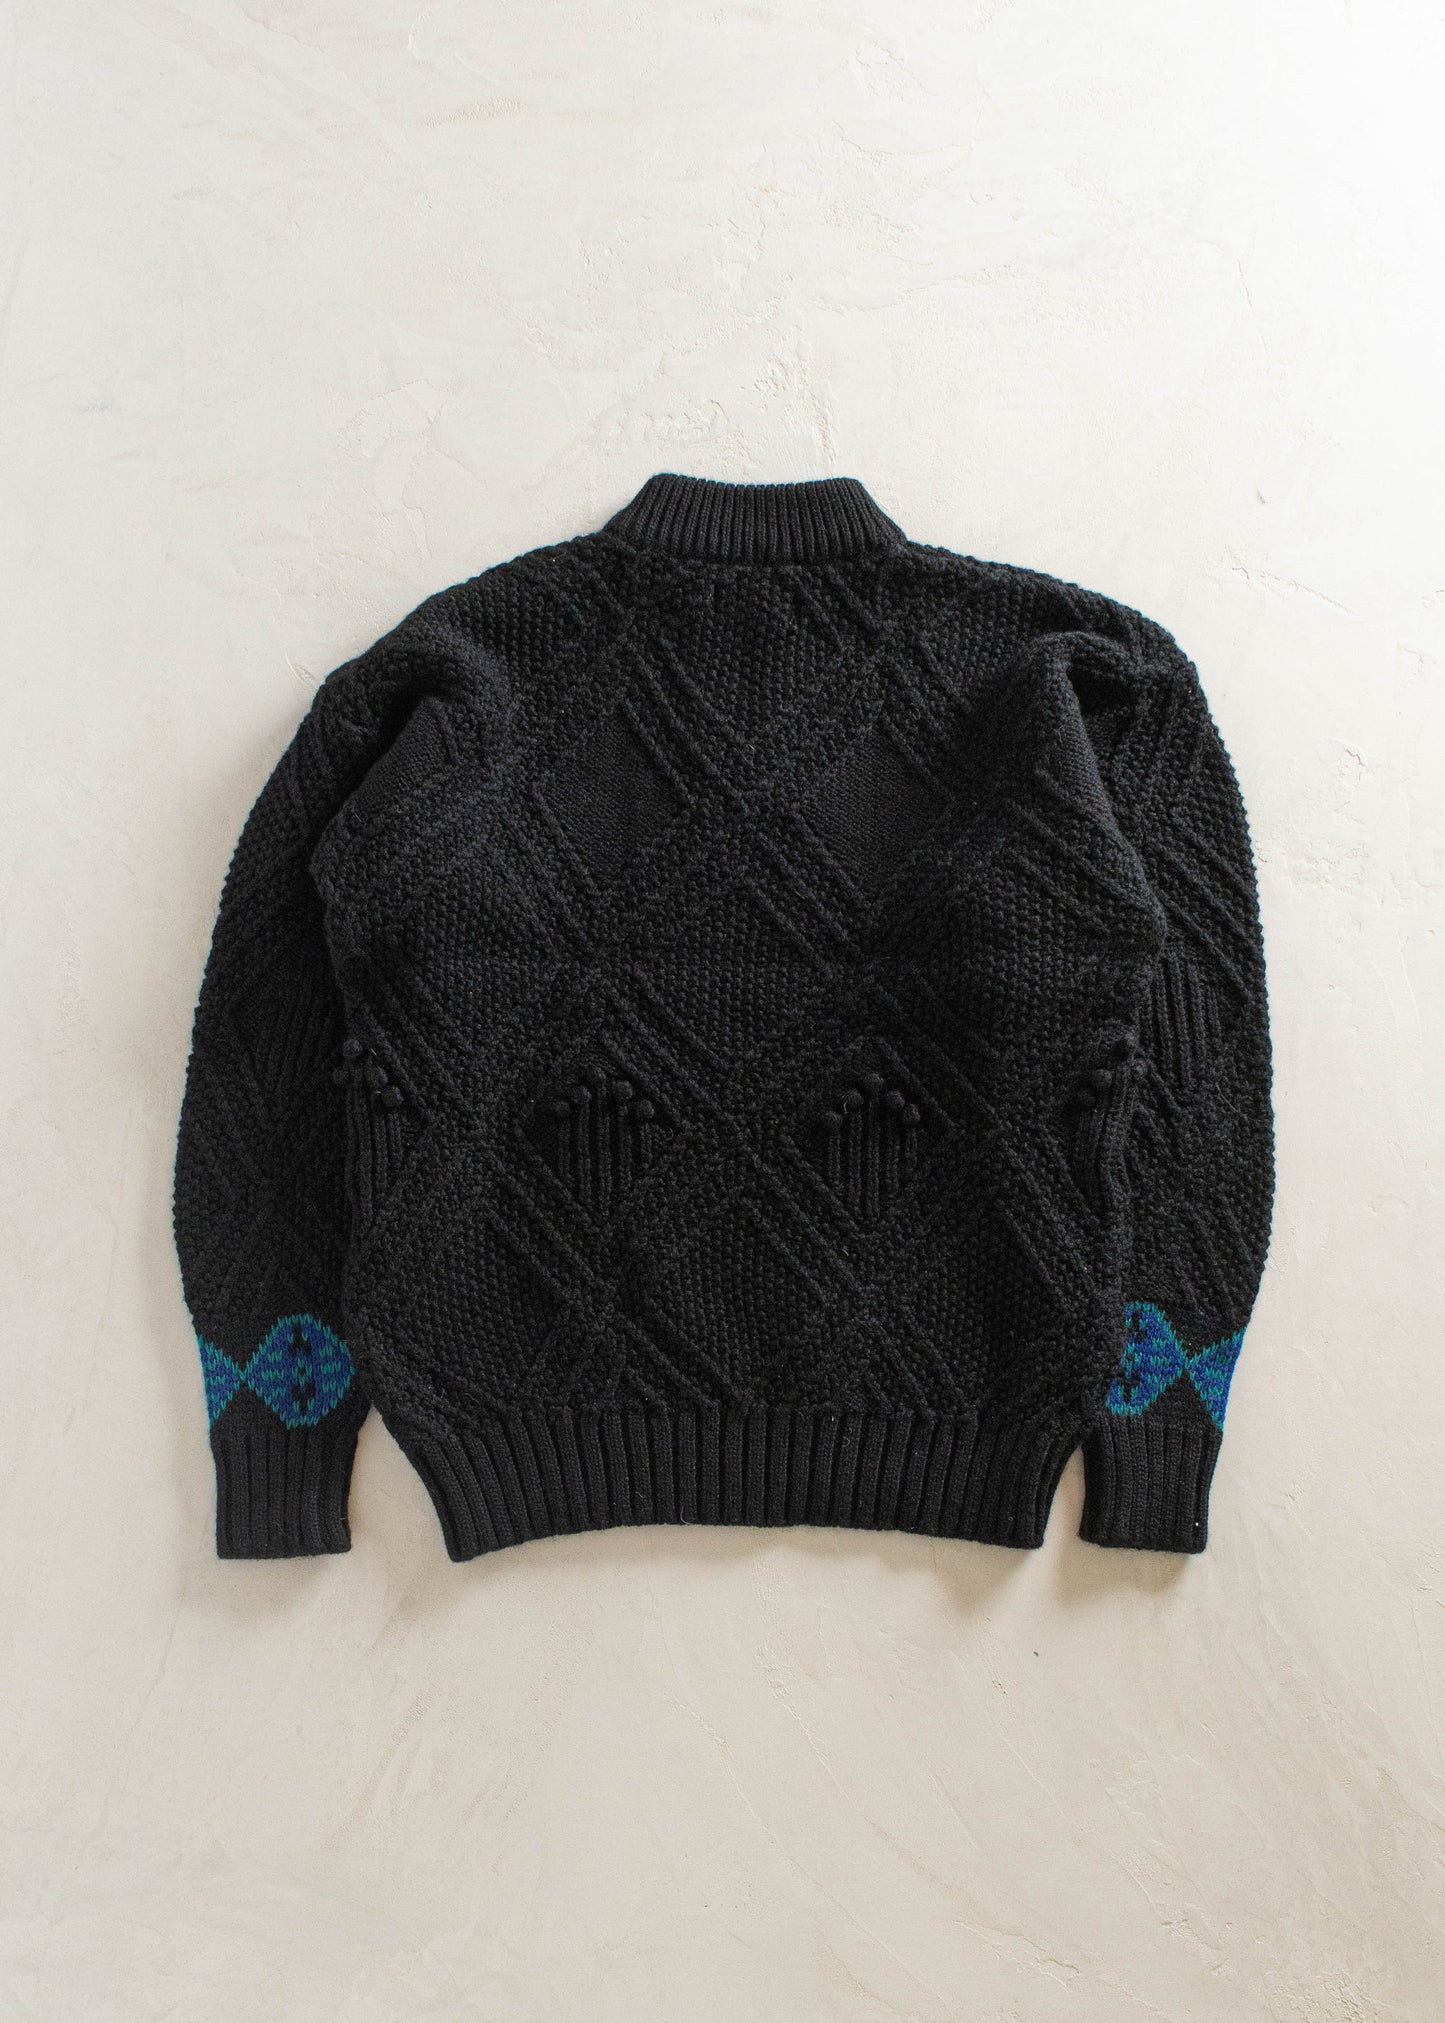 1980s Eddie Bauer Wool Pullover Sweater Size XL/2XL